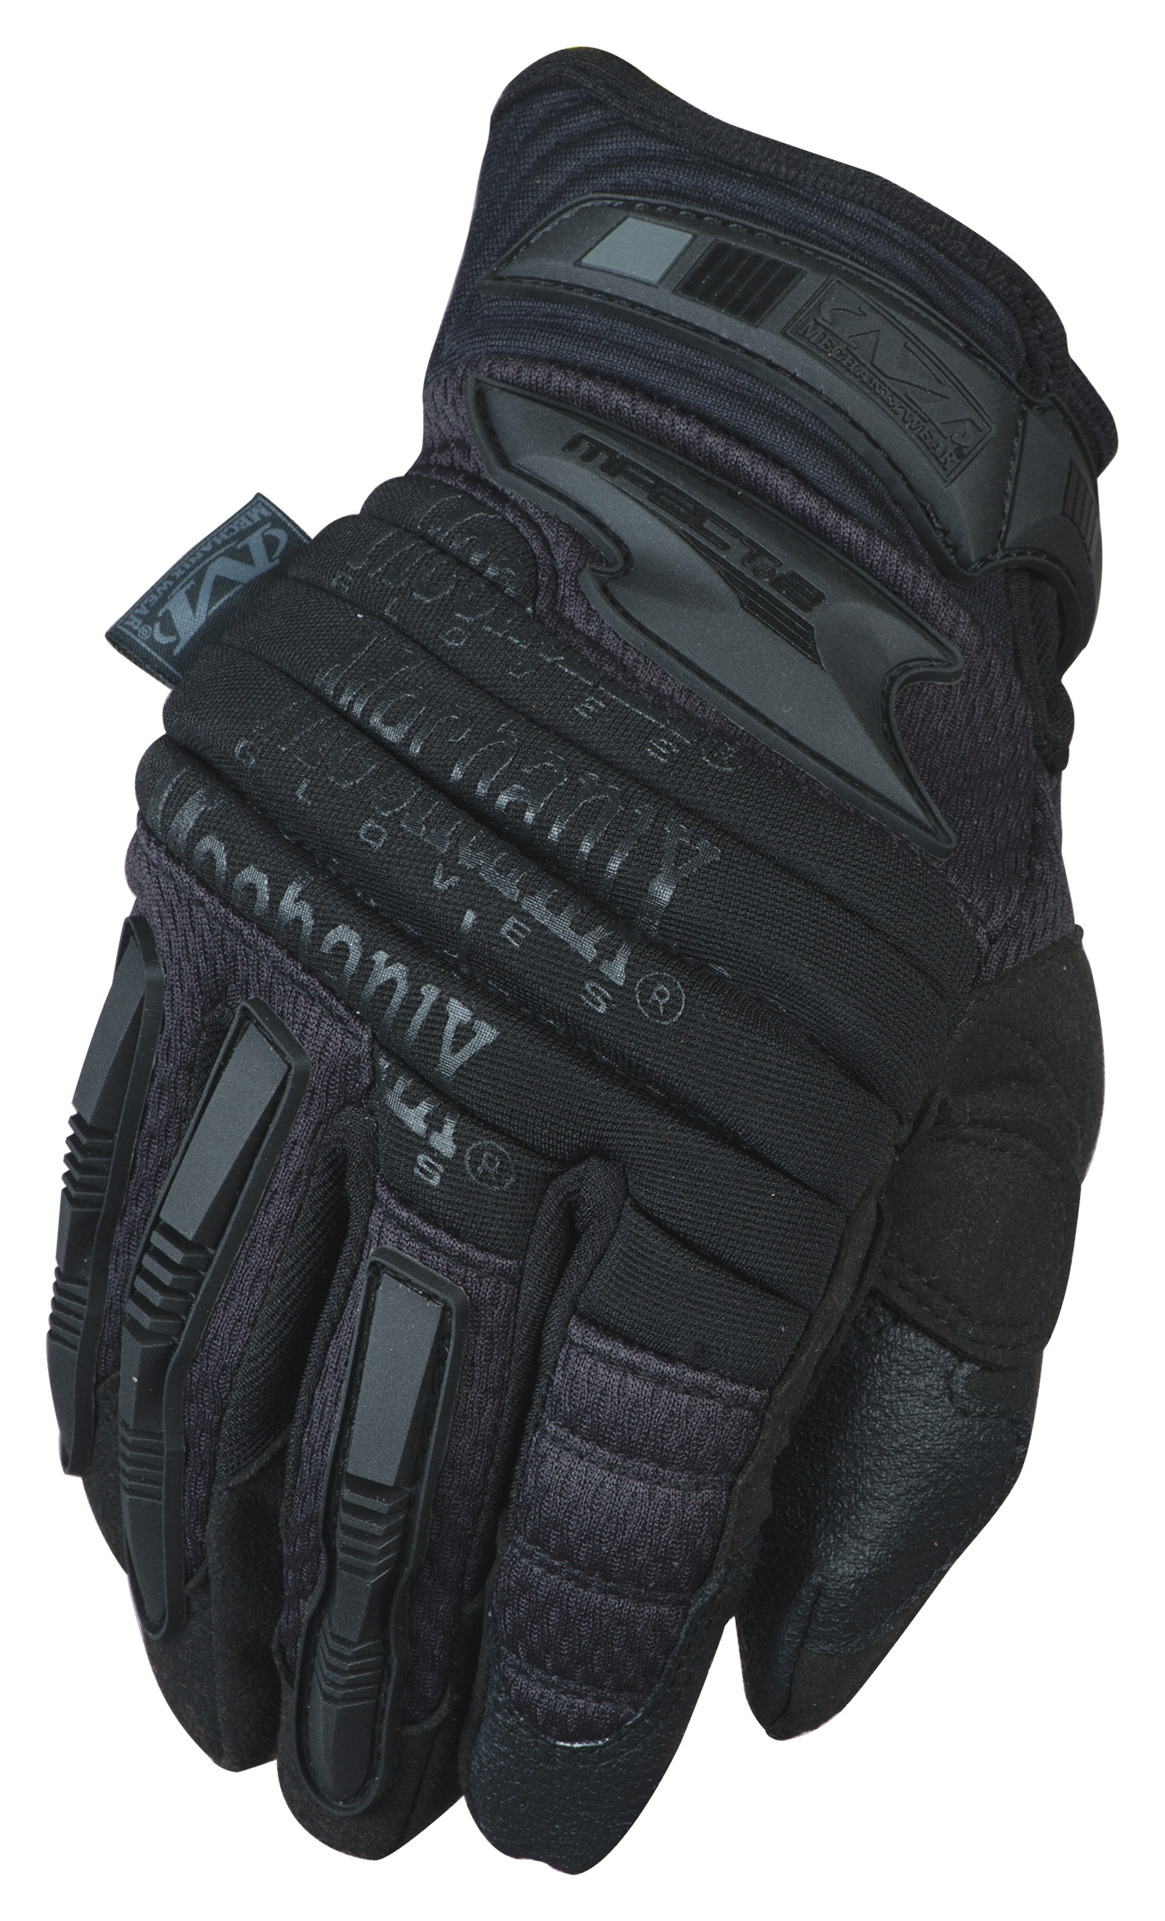 MECHANIX ochranné rukavice M-Pact 2 - Covert - čierne XL/11